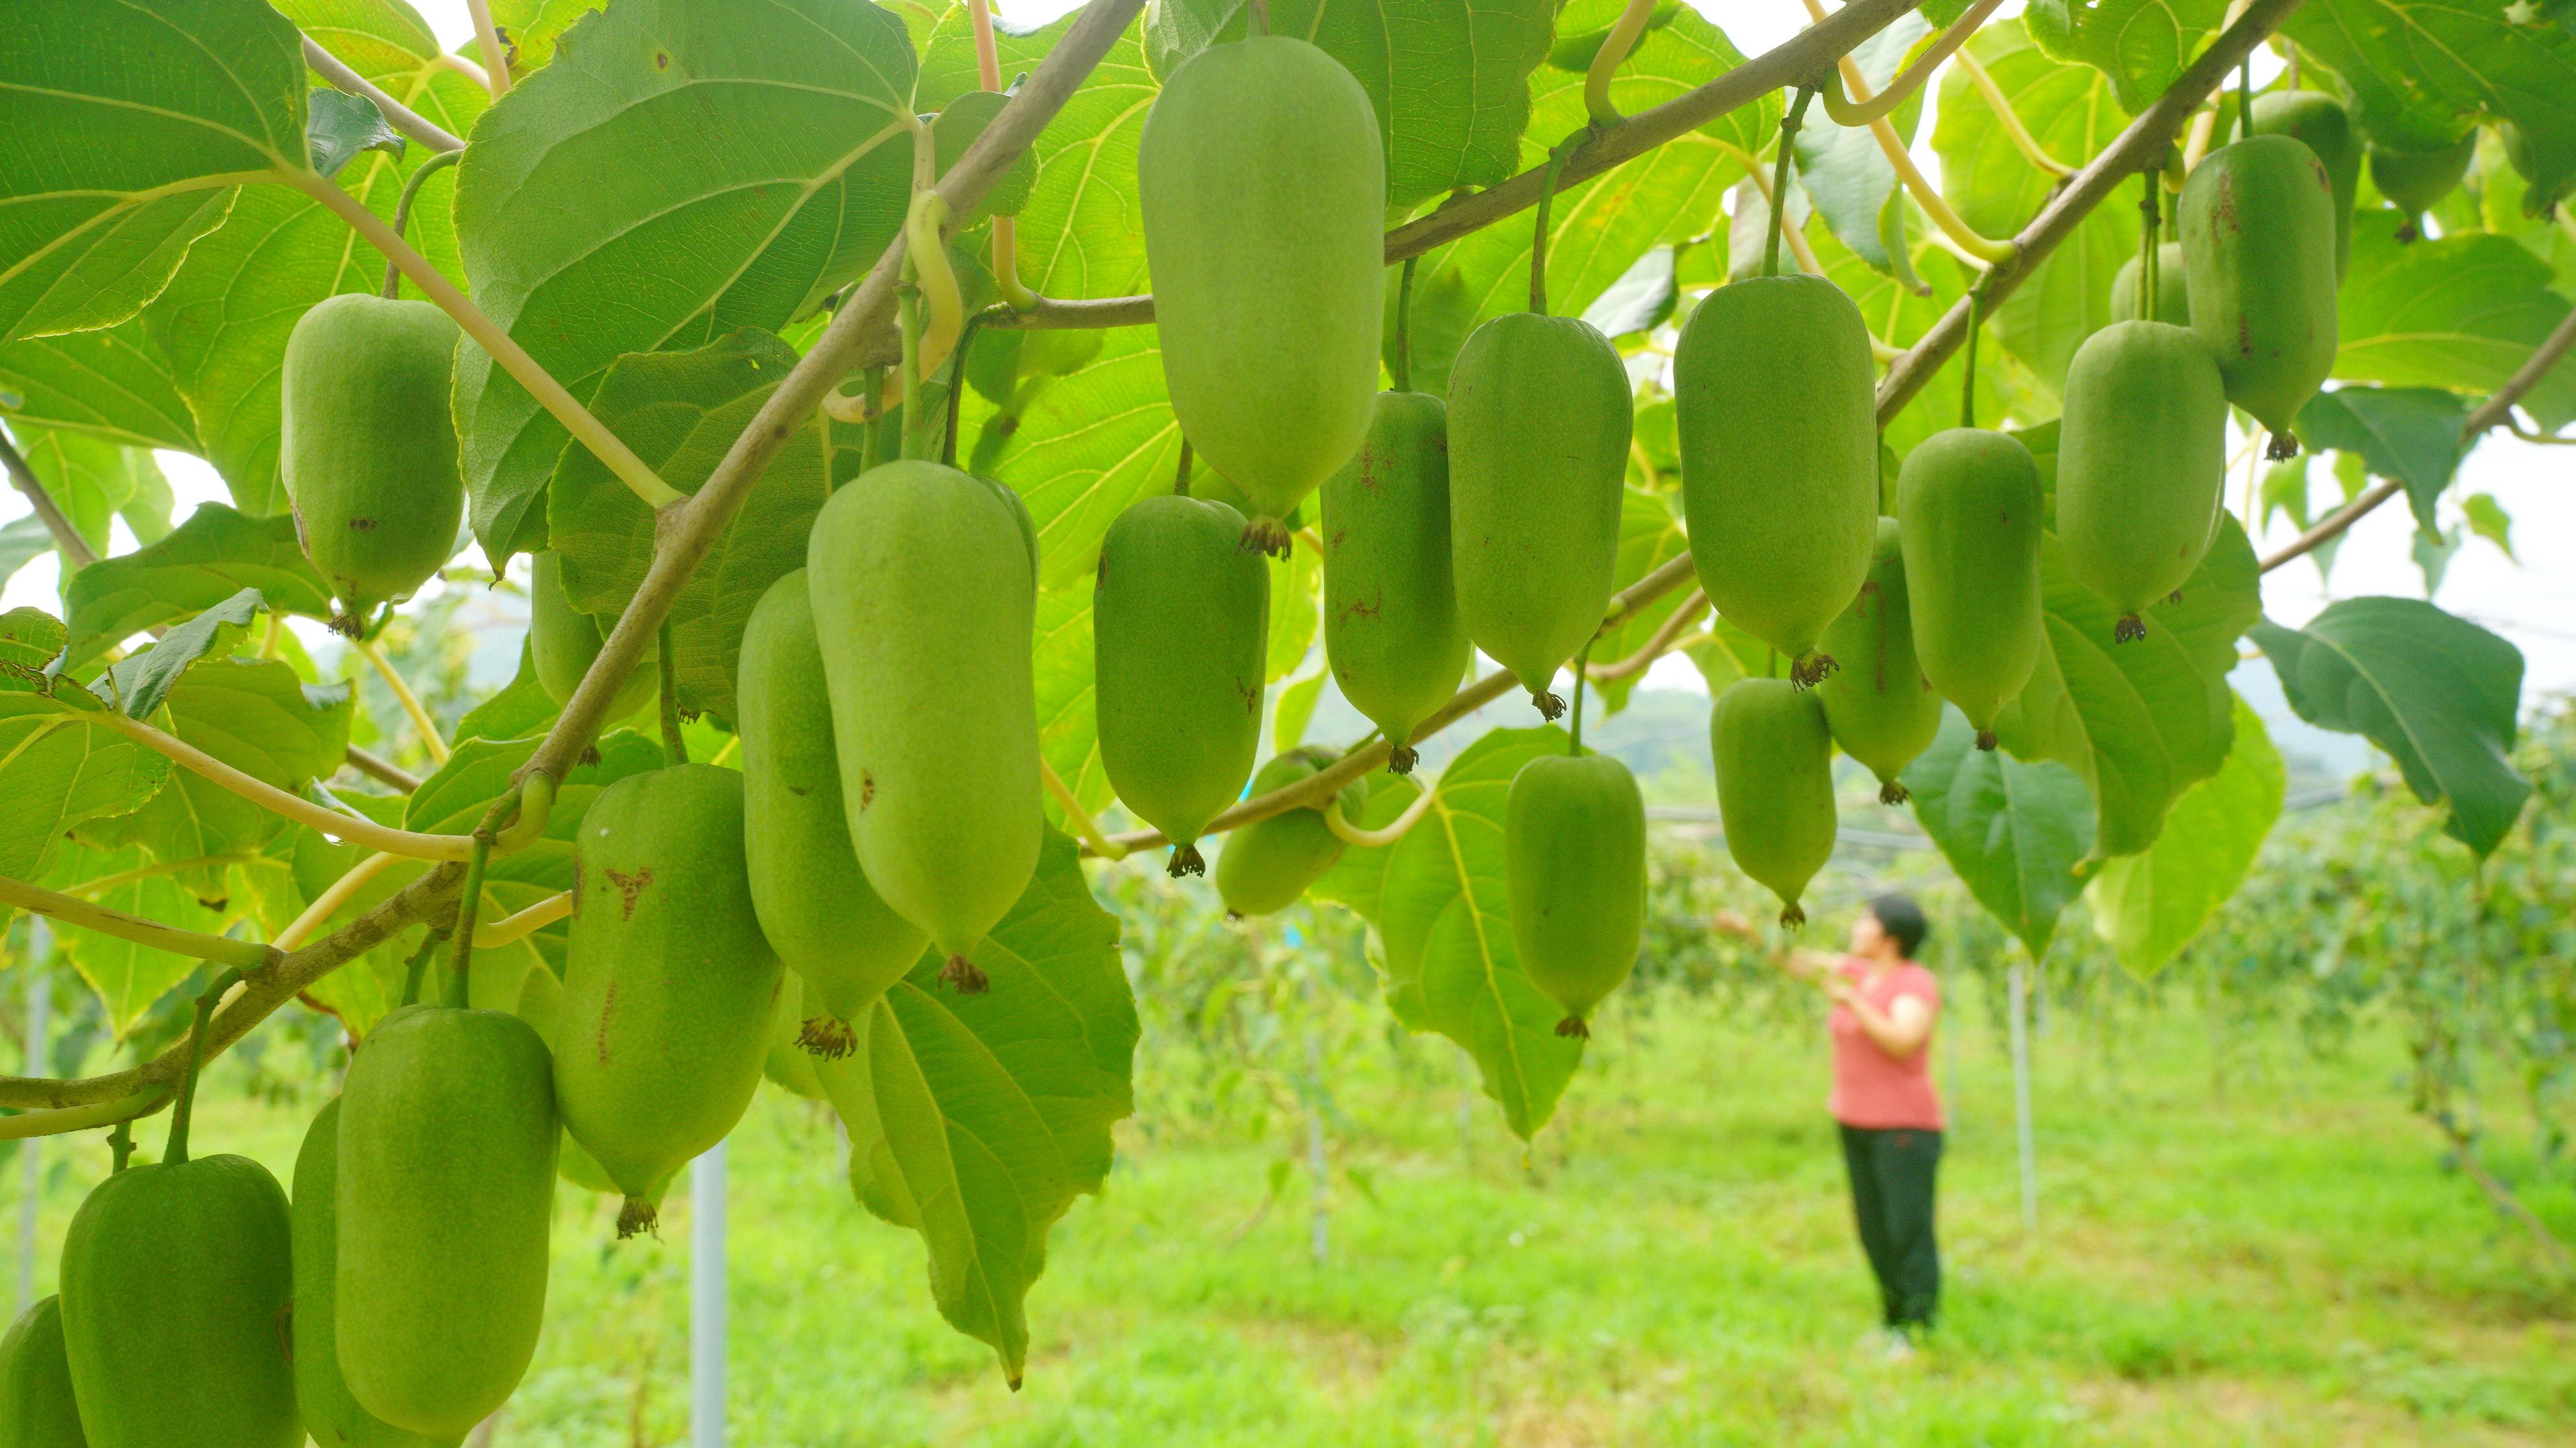 9月2日,河北省迁安市大五里乡张家峪村农民在采摘软枣猕猴桃